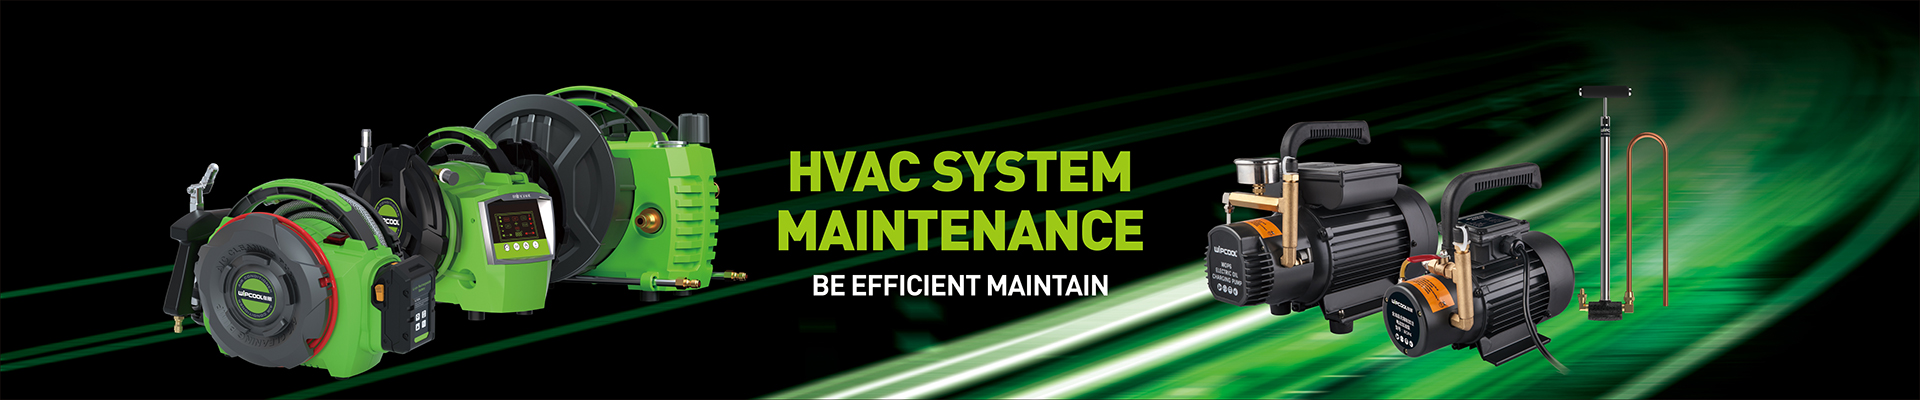 HVAC System Maintenance